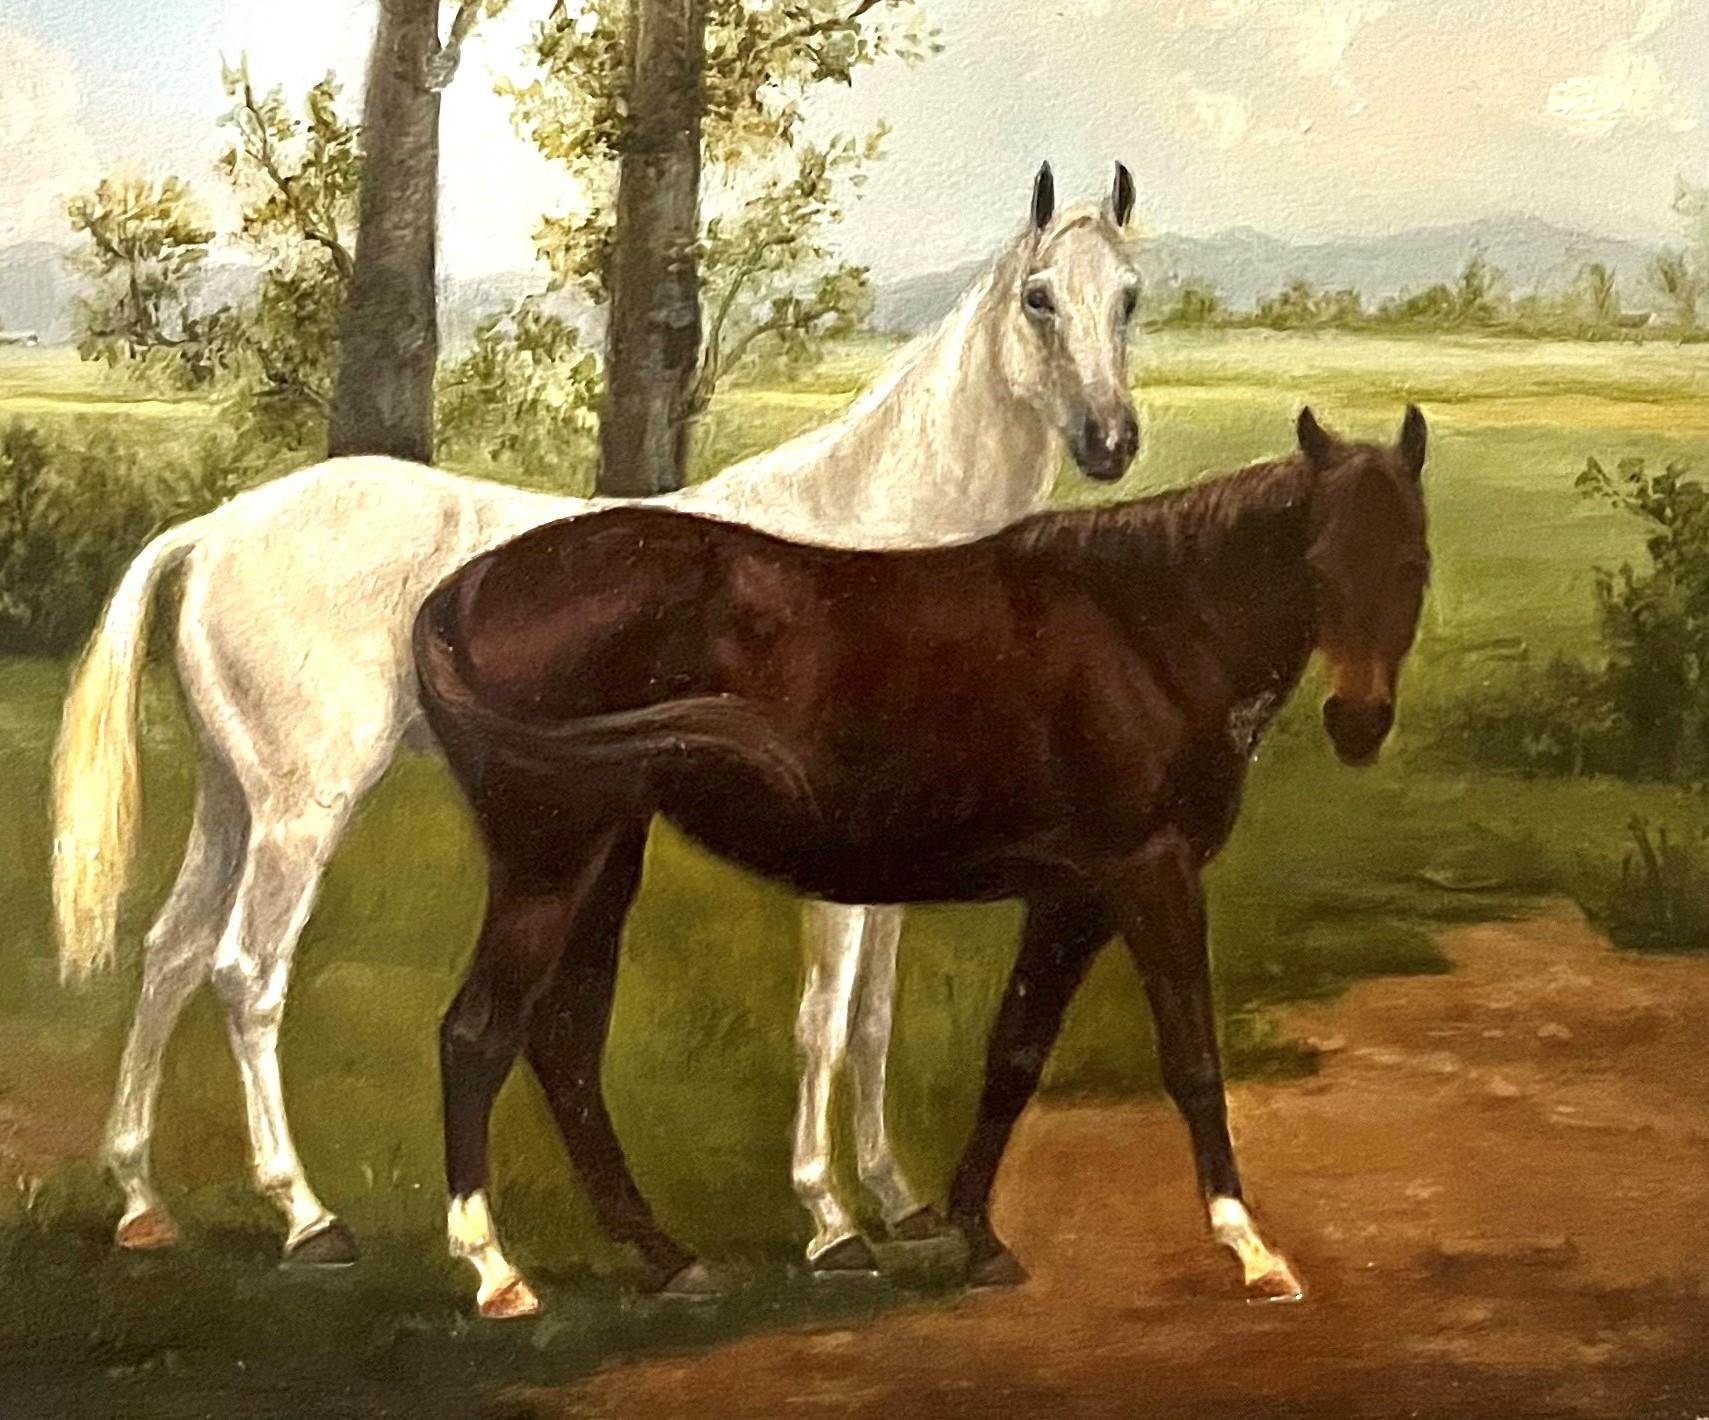 Bezauberndes, ikonisches Gemälde von Alert Horses in einer charmanten pastoralen Szene – Painting von Valarie Wolf